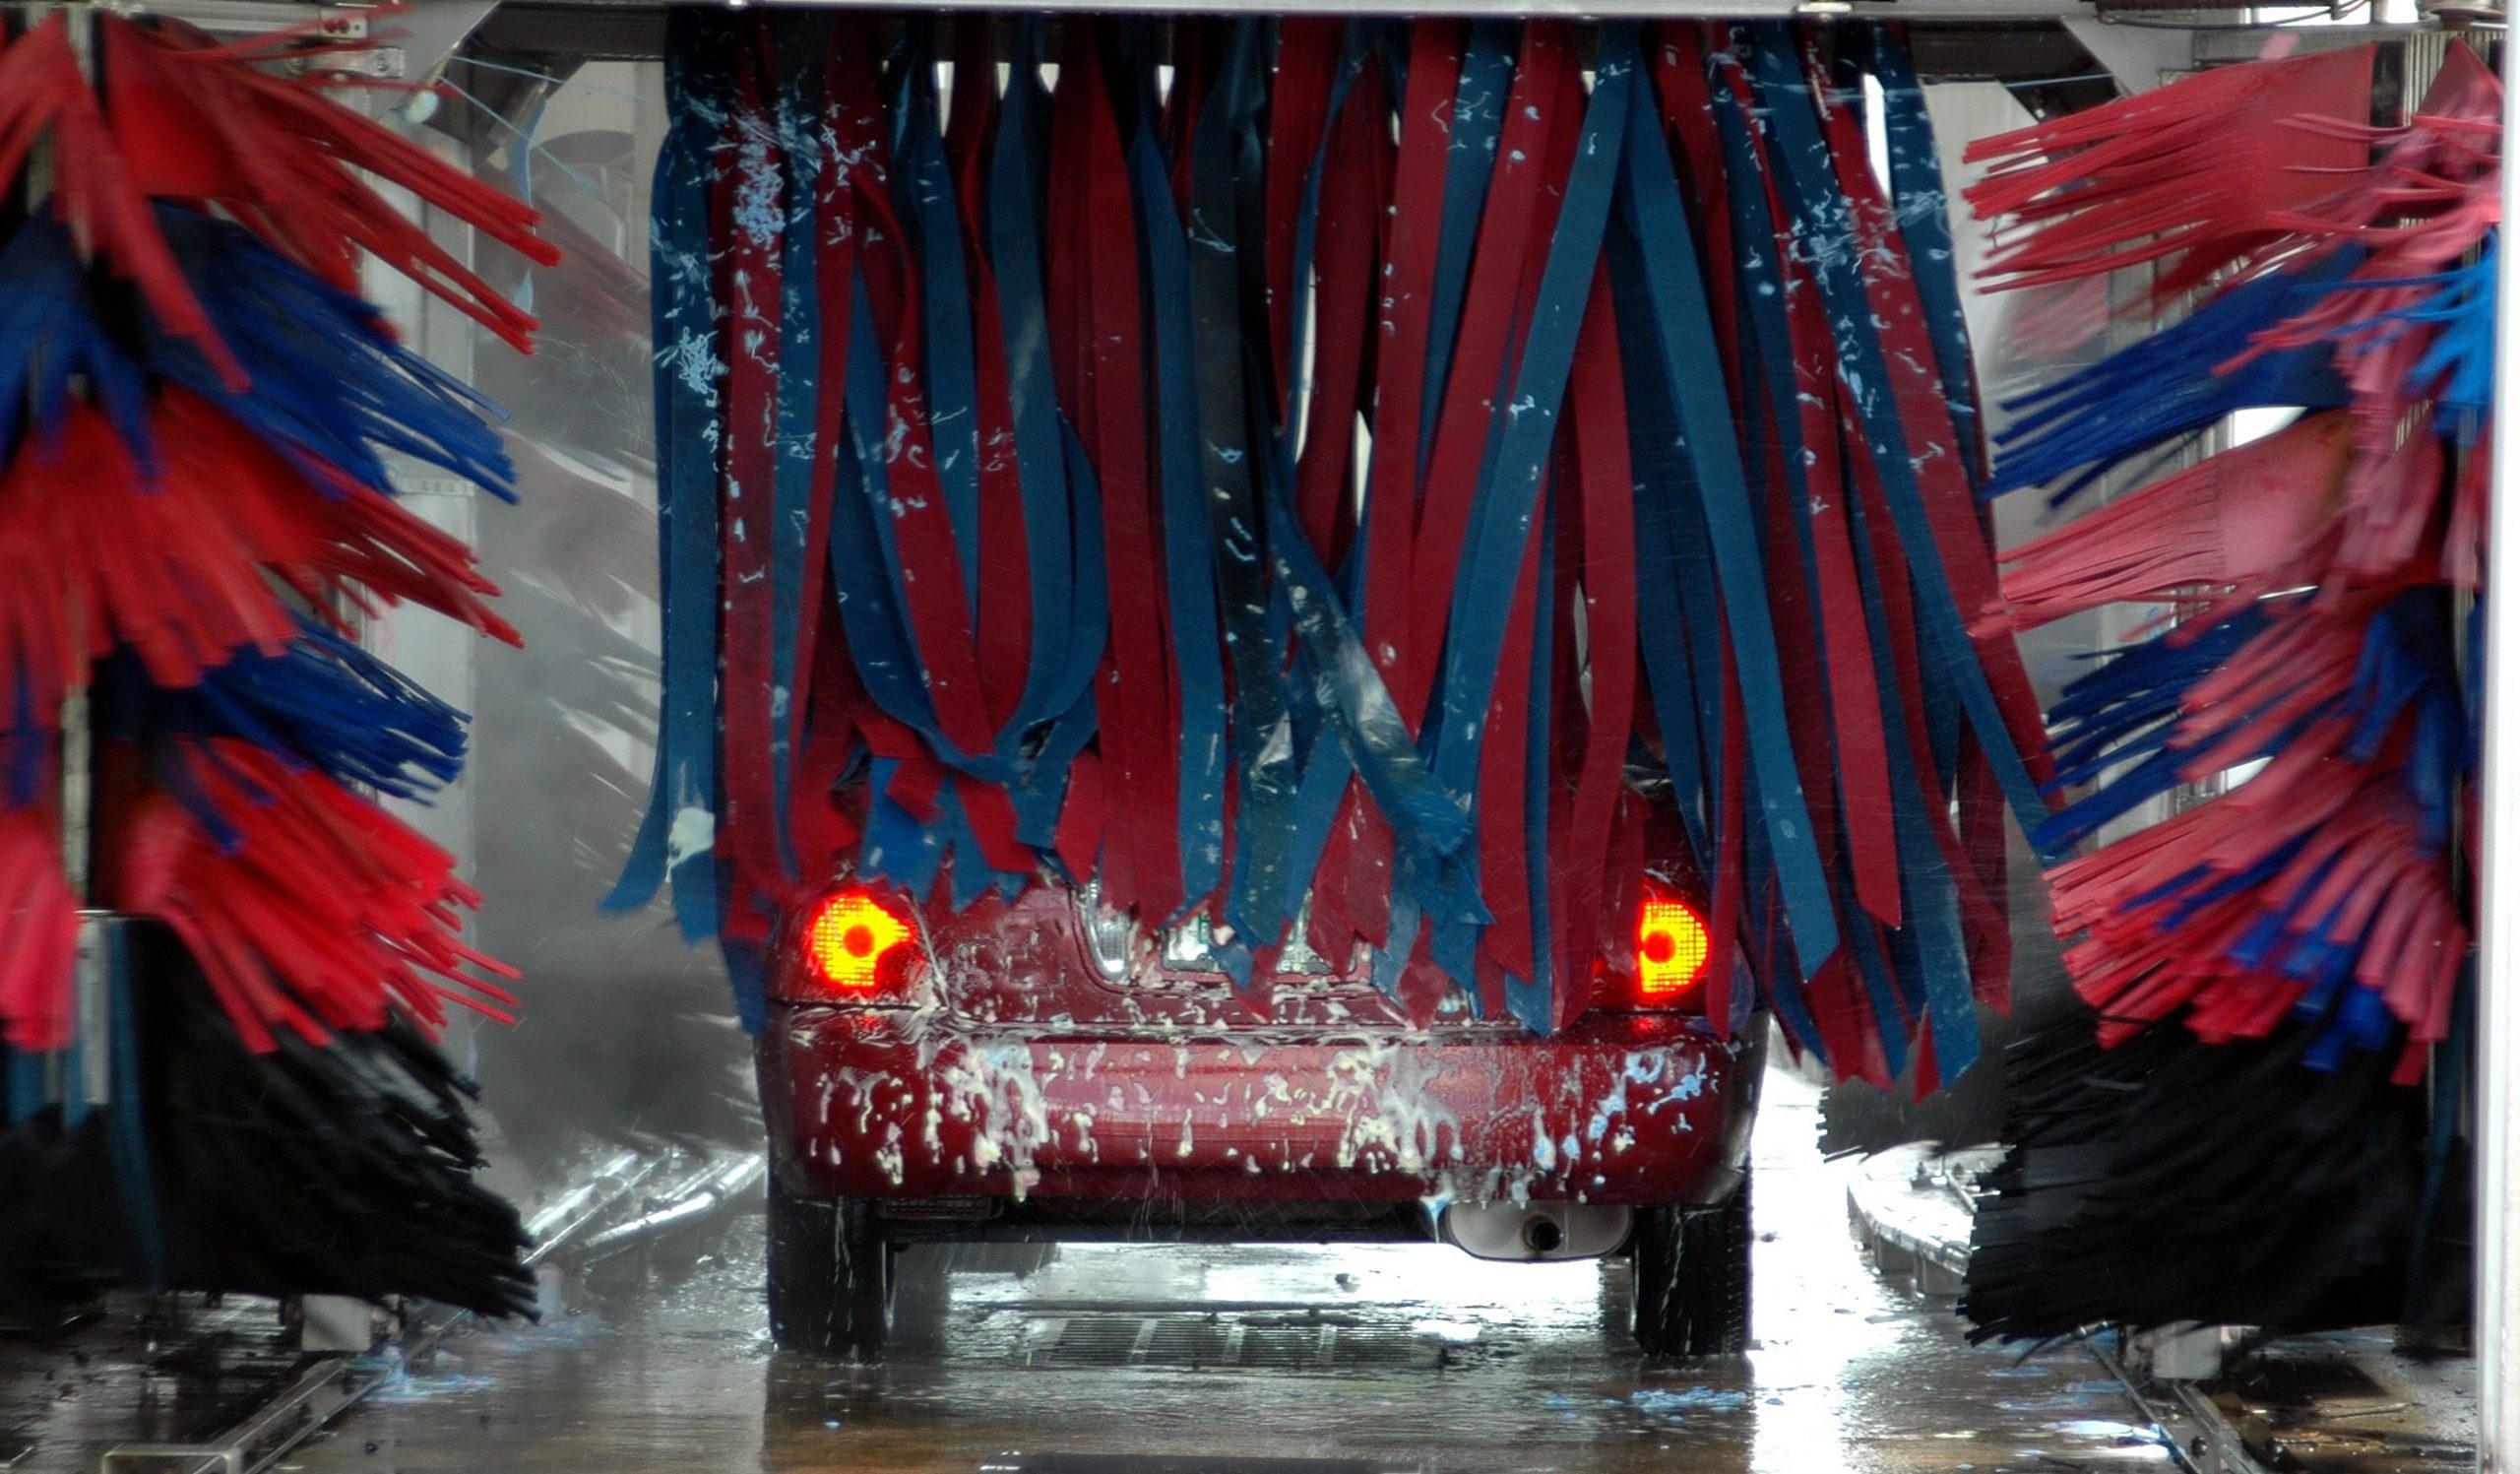 De eerste keer naar een autowasstraat: Een avontuurlijke reiniging